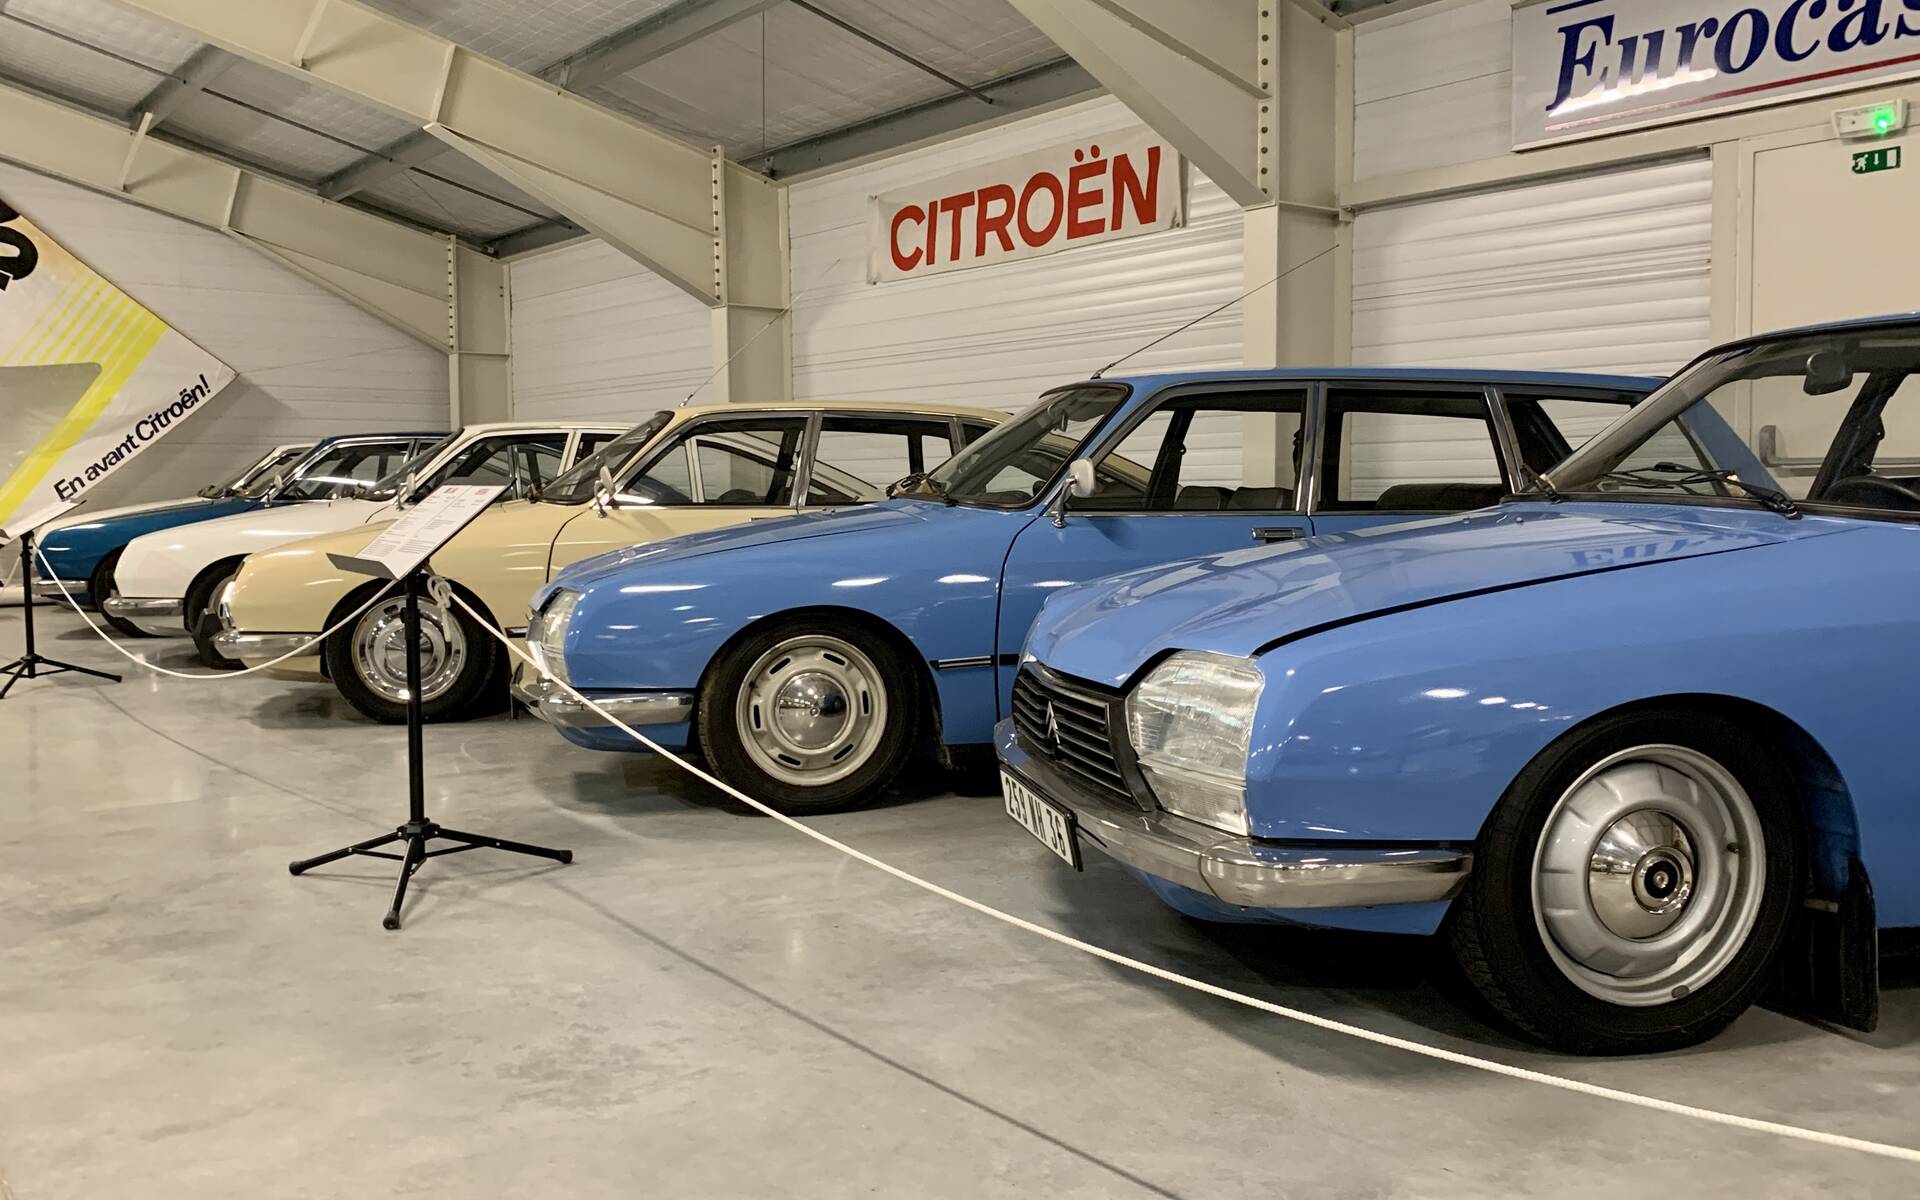 32 - Photos: plus de 100 Citroën d'exception réunies dans un musée en France 543106-photos-plus-de-100-citroen-d-exception-reunies-dans-un-musee-en-france